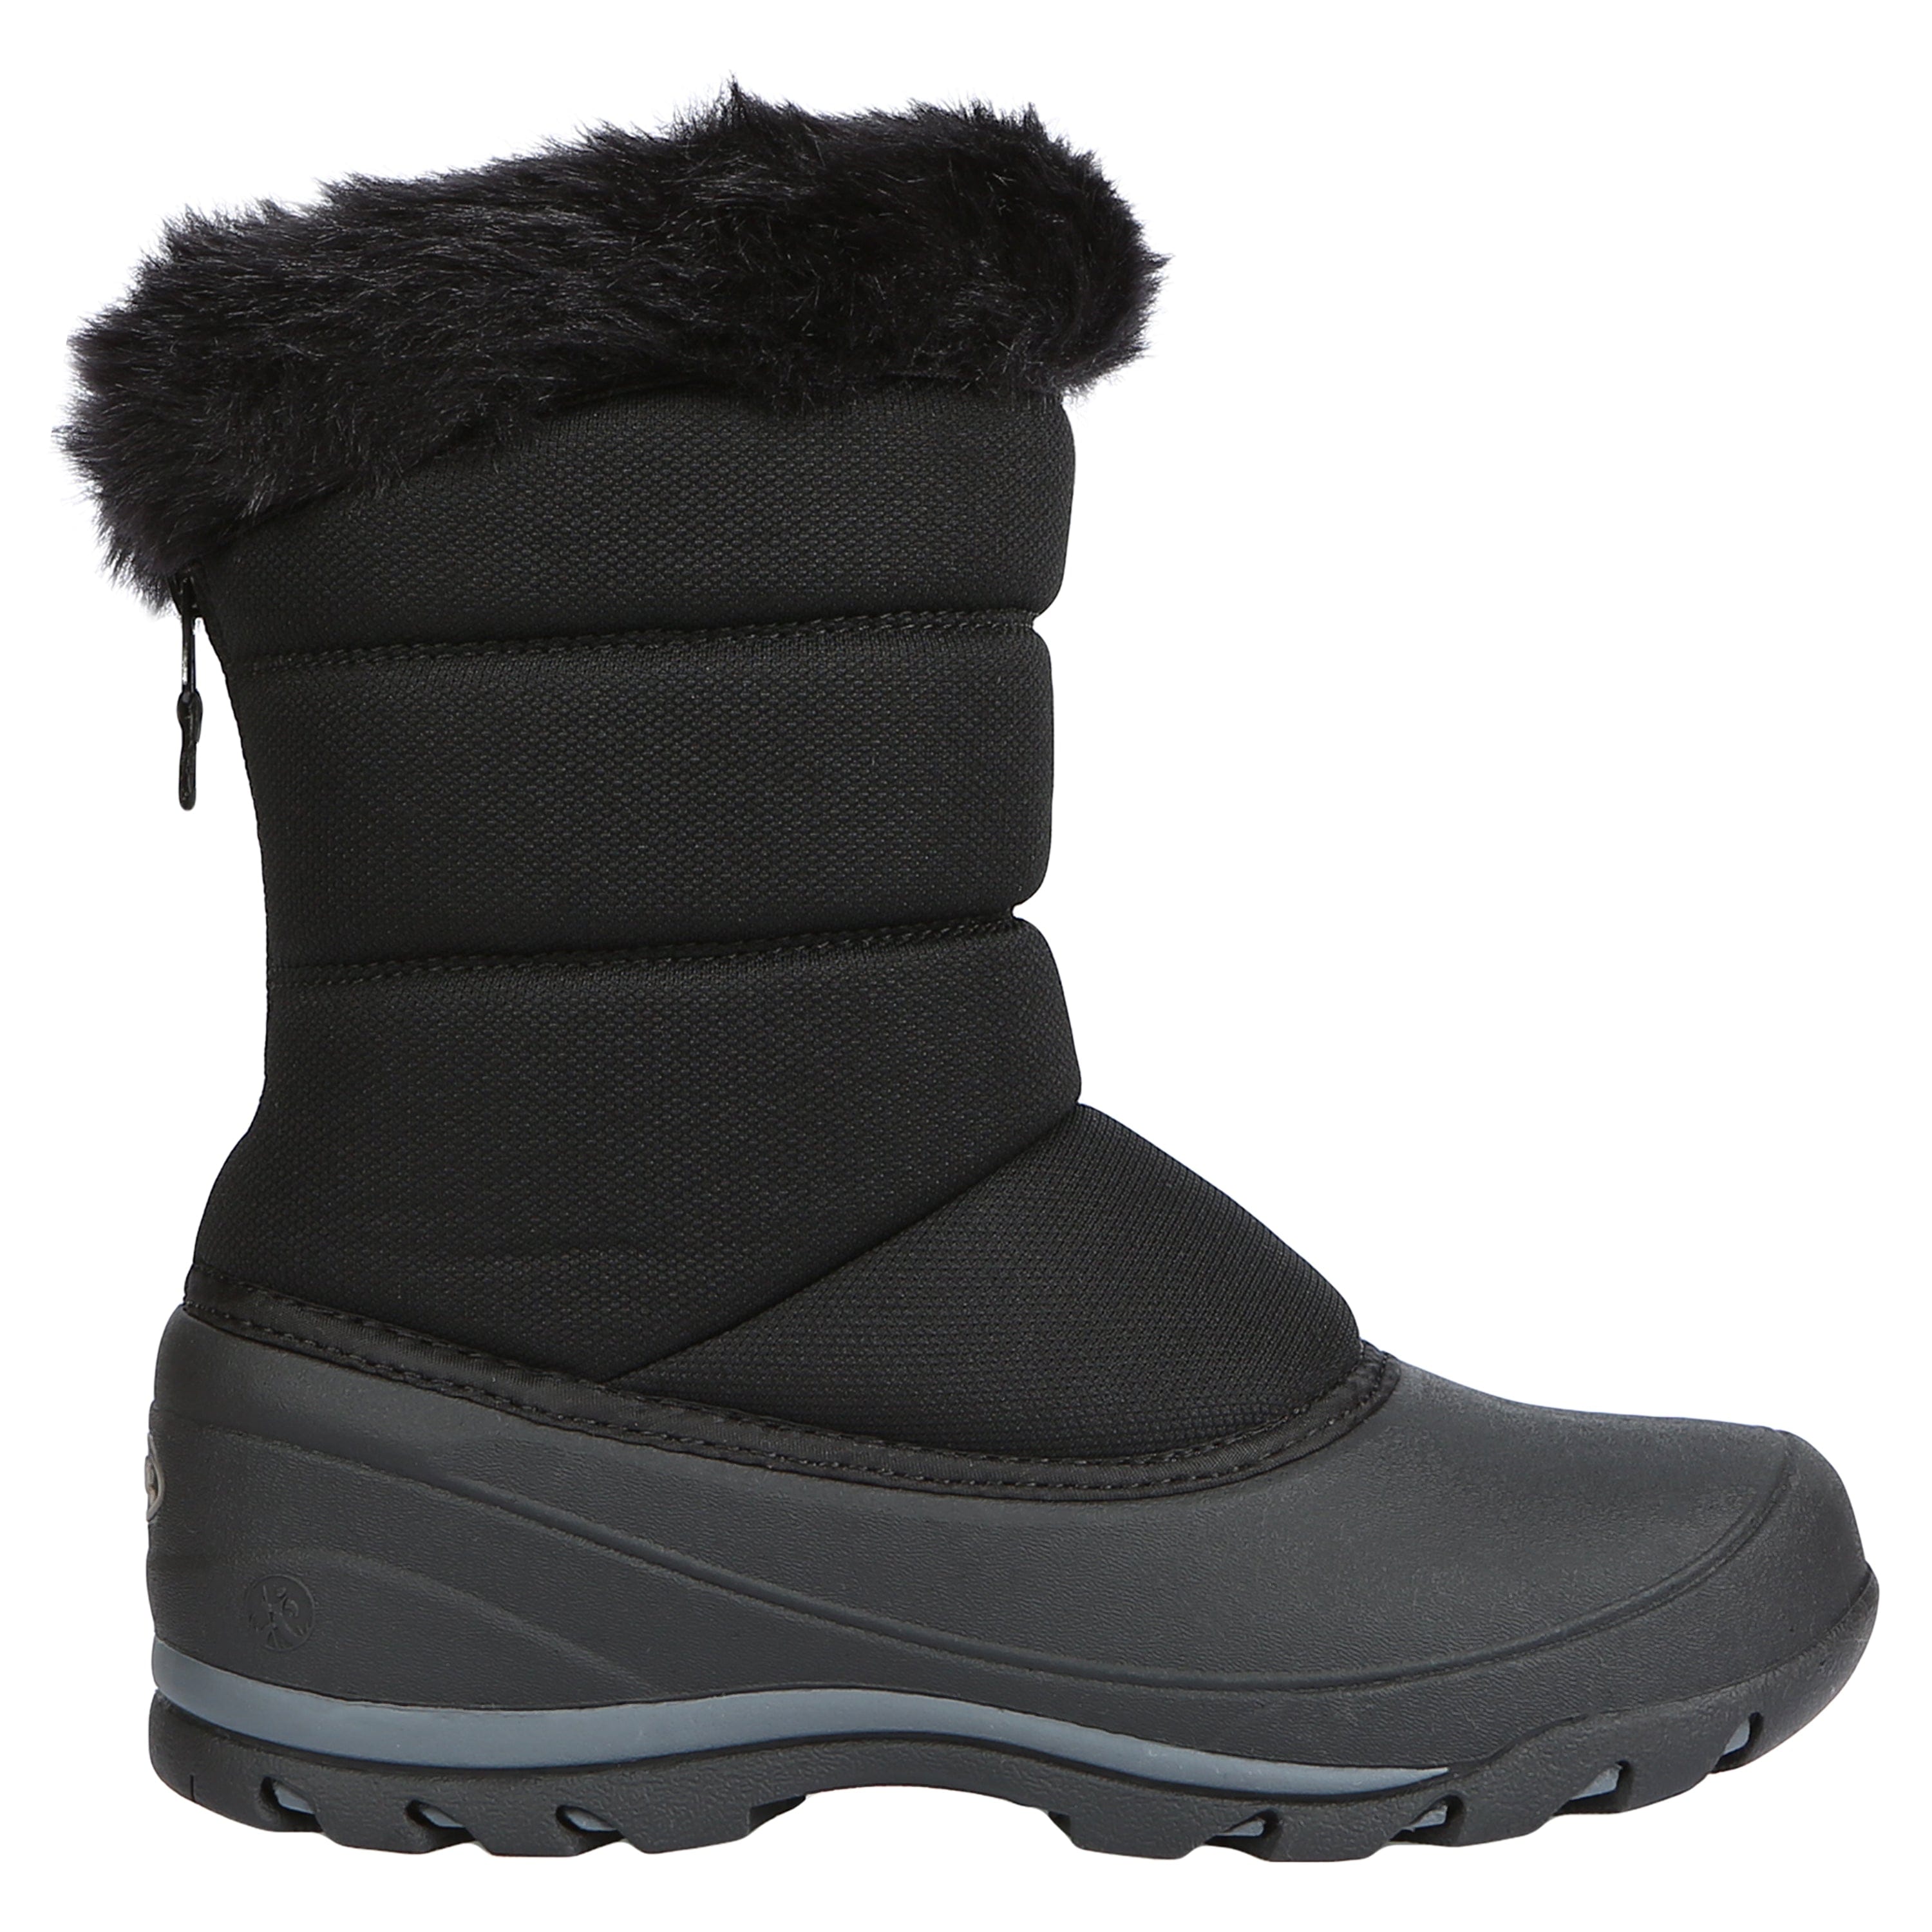 zip up Black snow boots